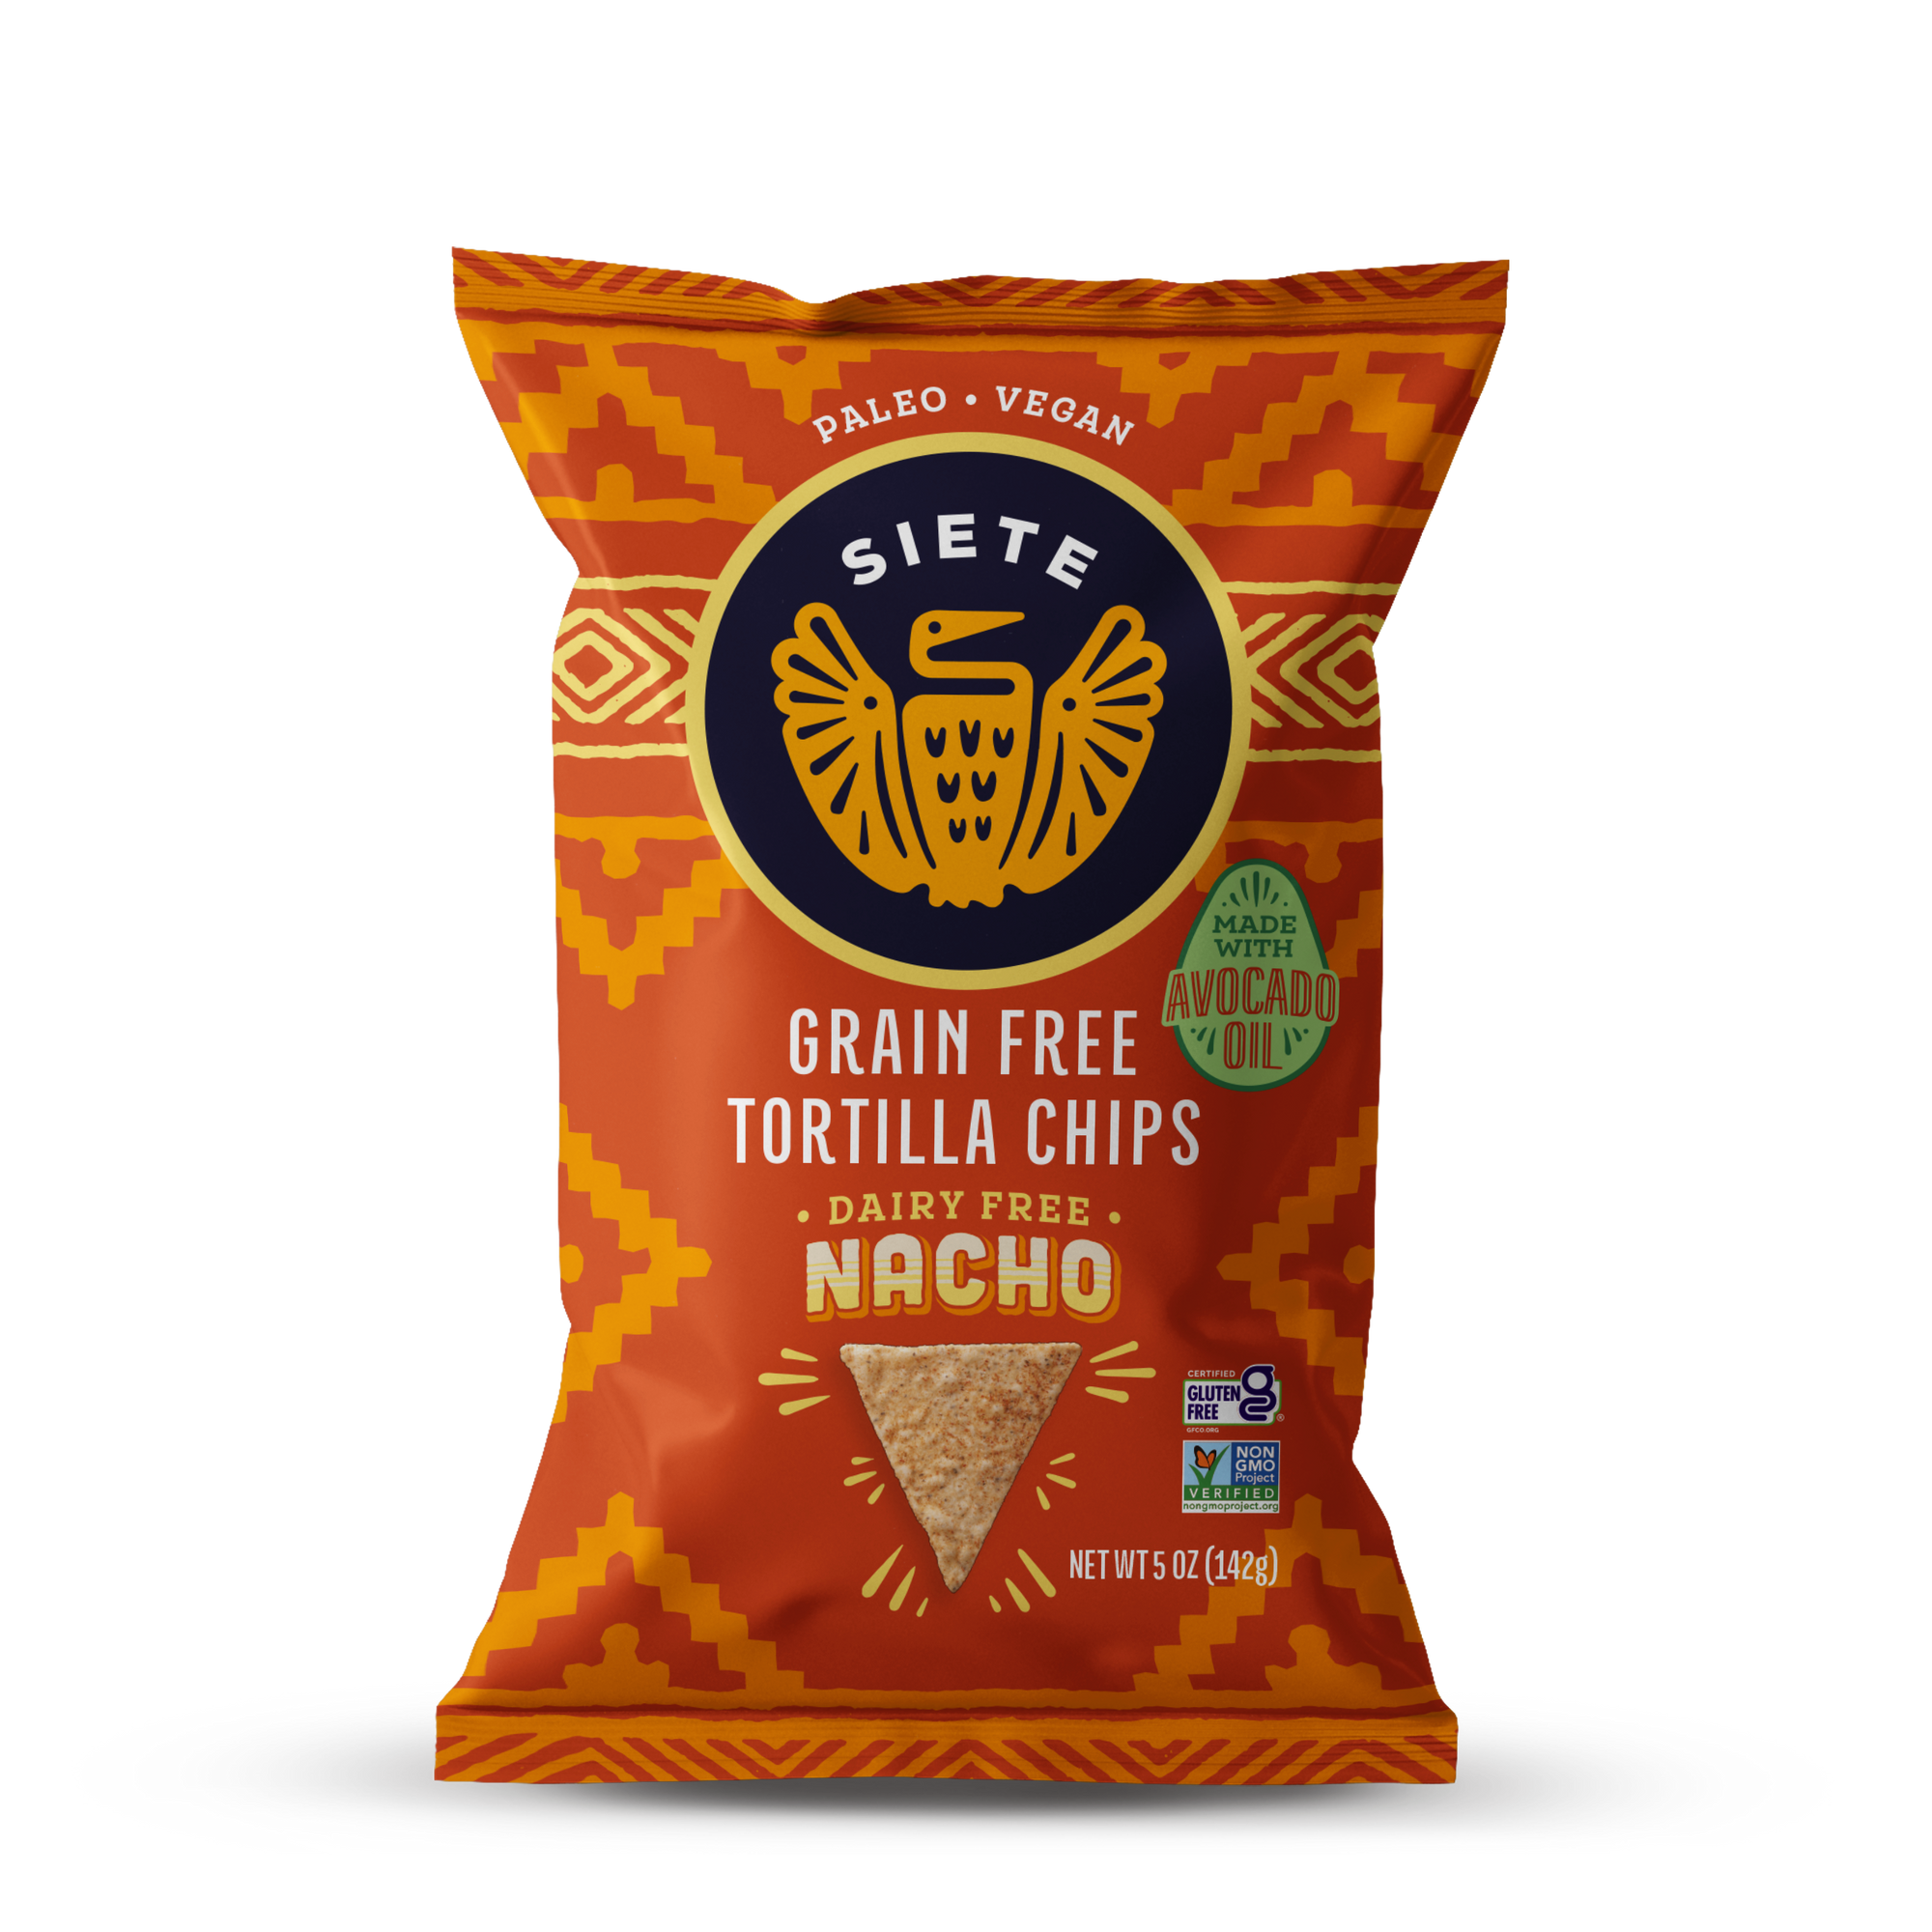 Nacho Grain Free Tortilla Chips 5 oz - 6 Bags